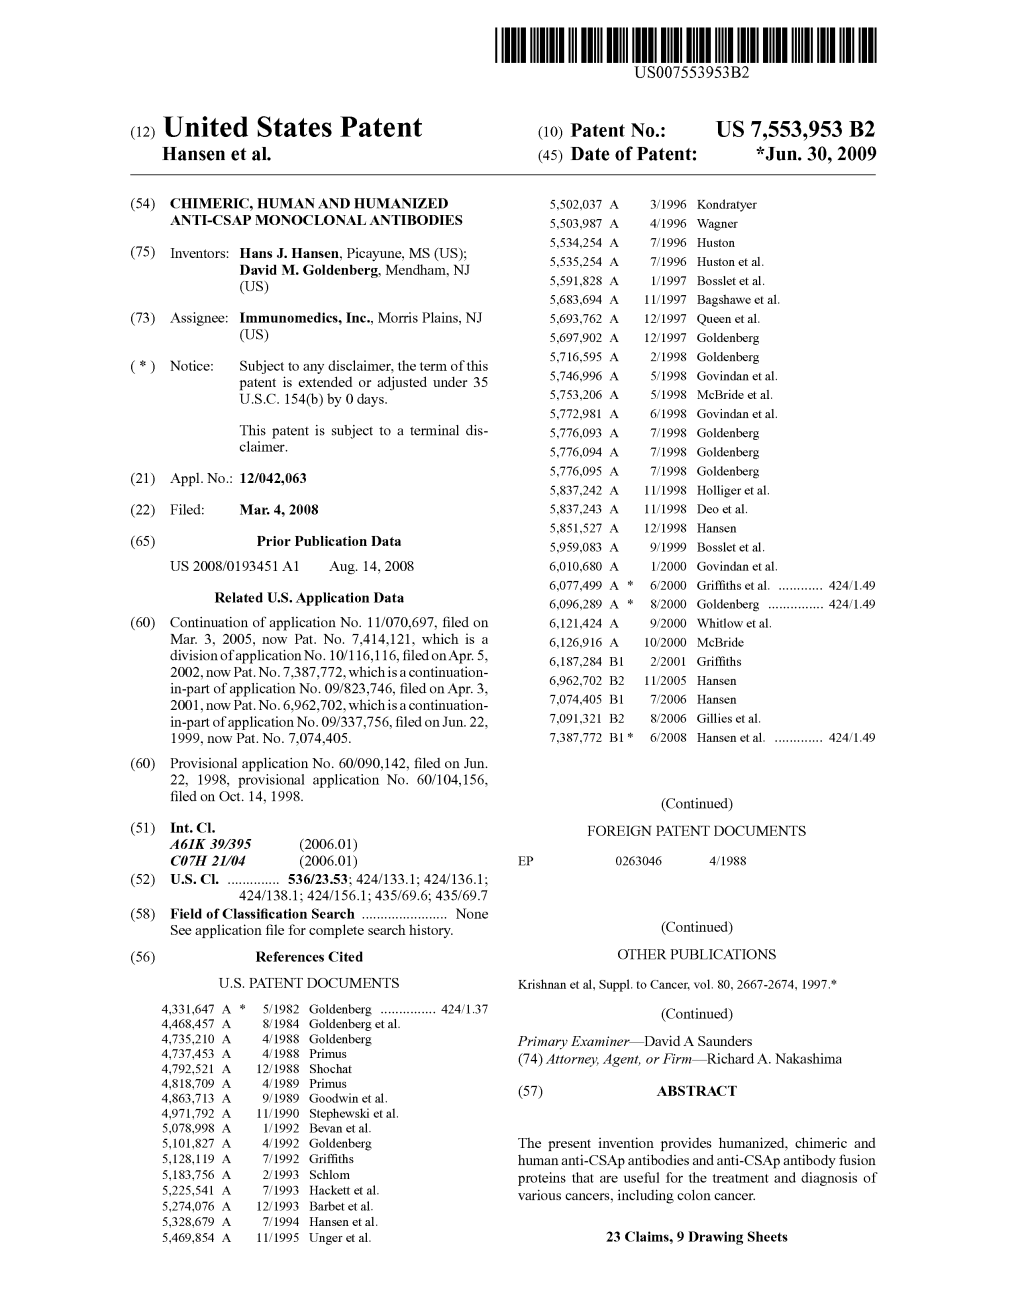 (12) United States Patent (10) Patent No.: US 7553,953 B2 Hansen Et Al